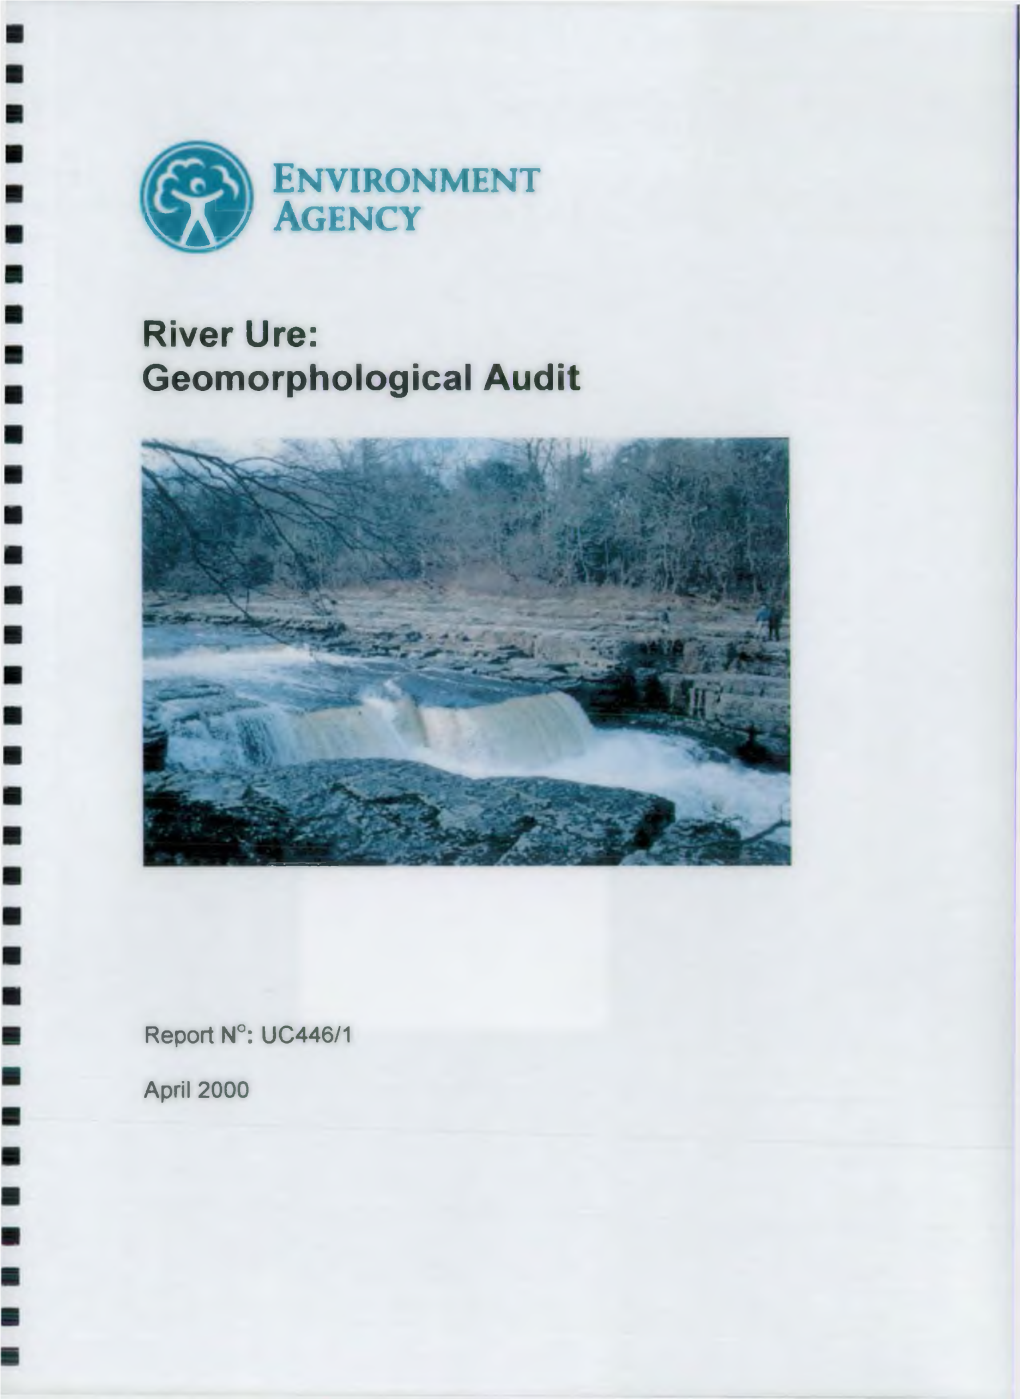 River Ure: Geomorphological Audit